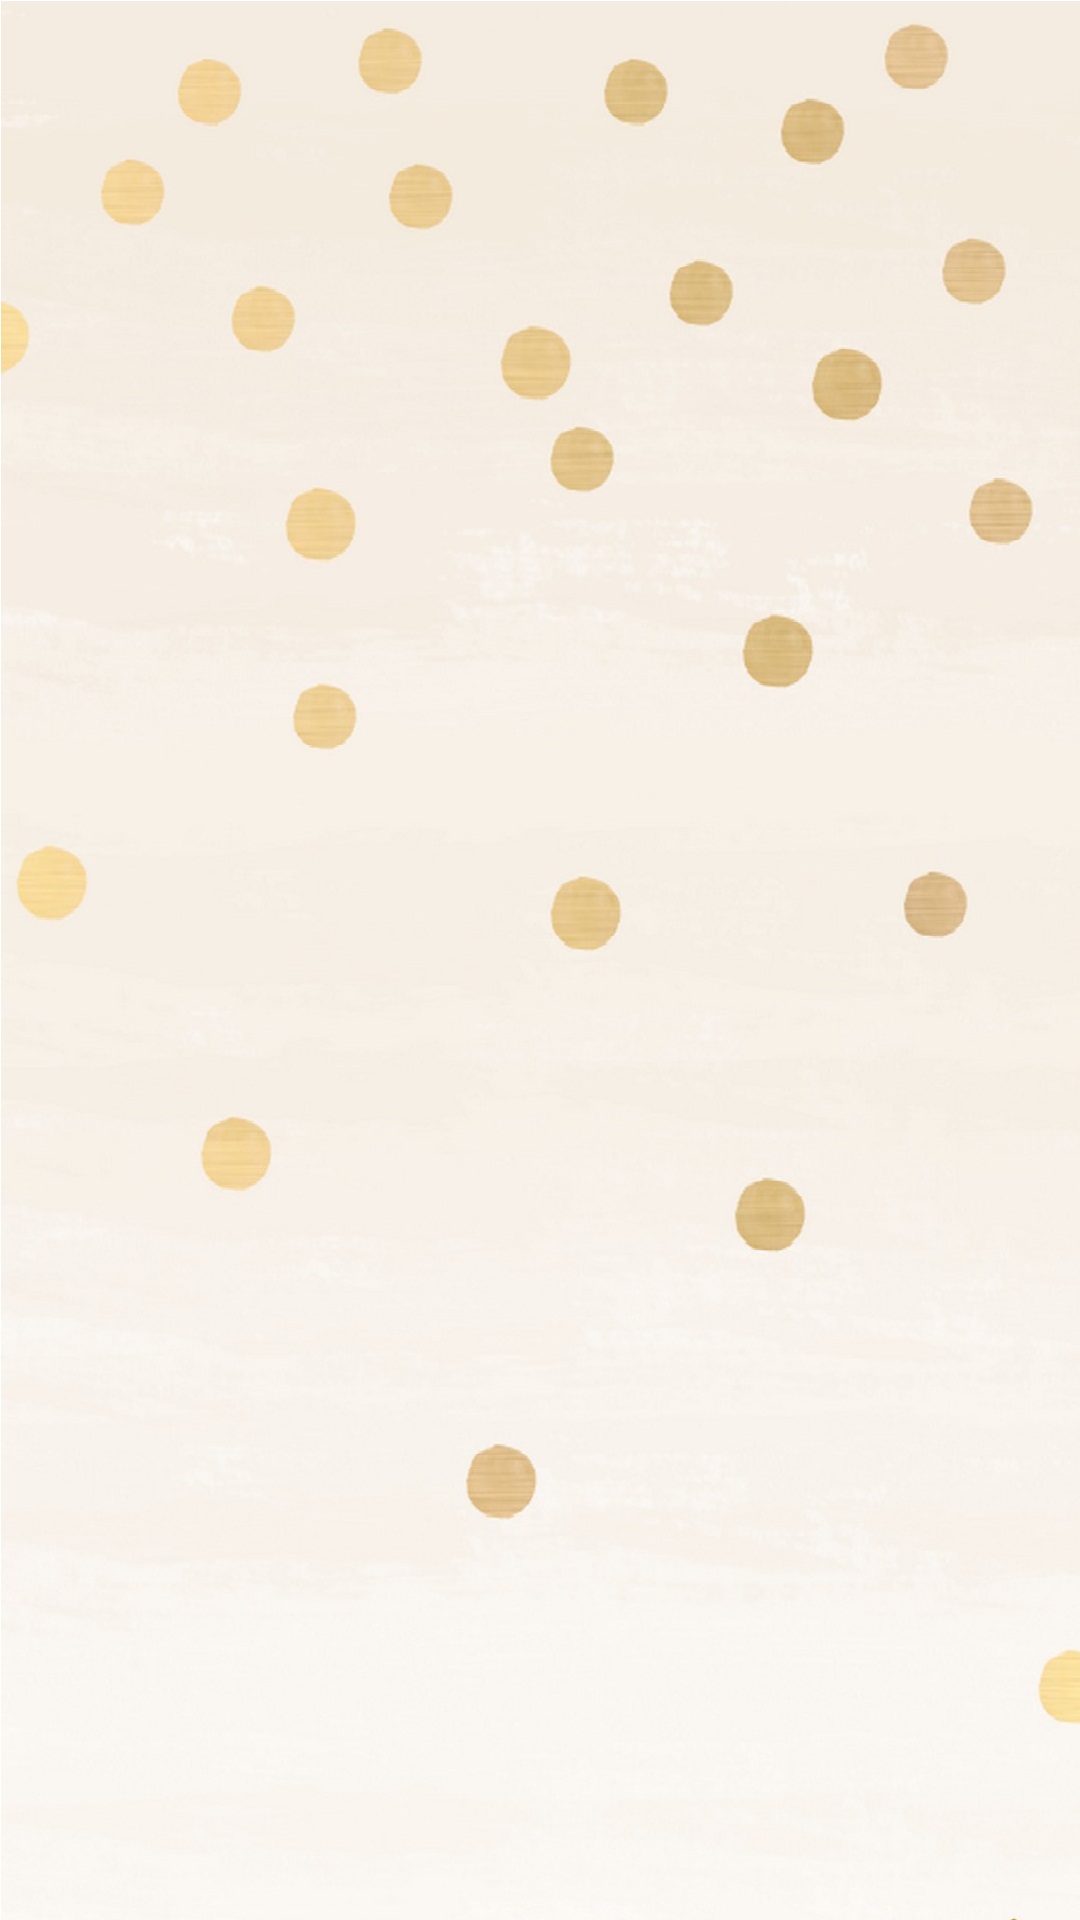 ゴールドのテーマの壁紙,白い,パターン,水玉模様,ベージュ,黄